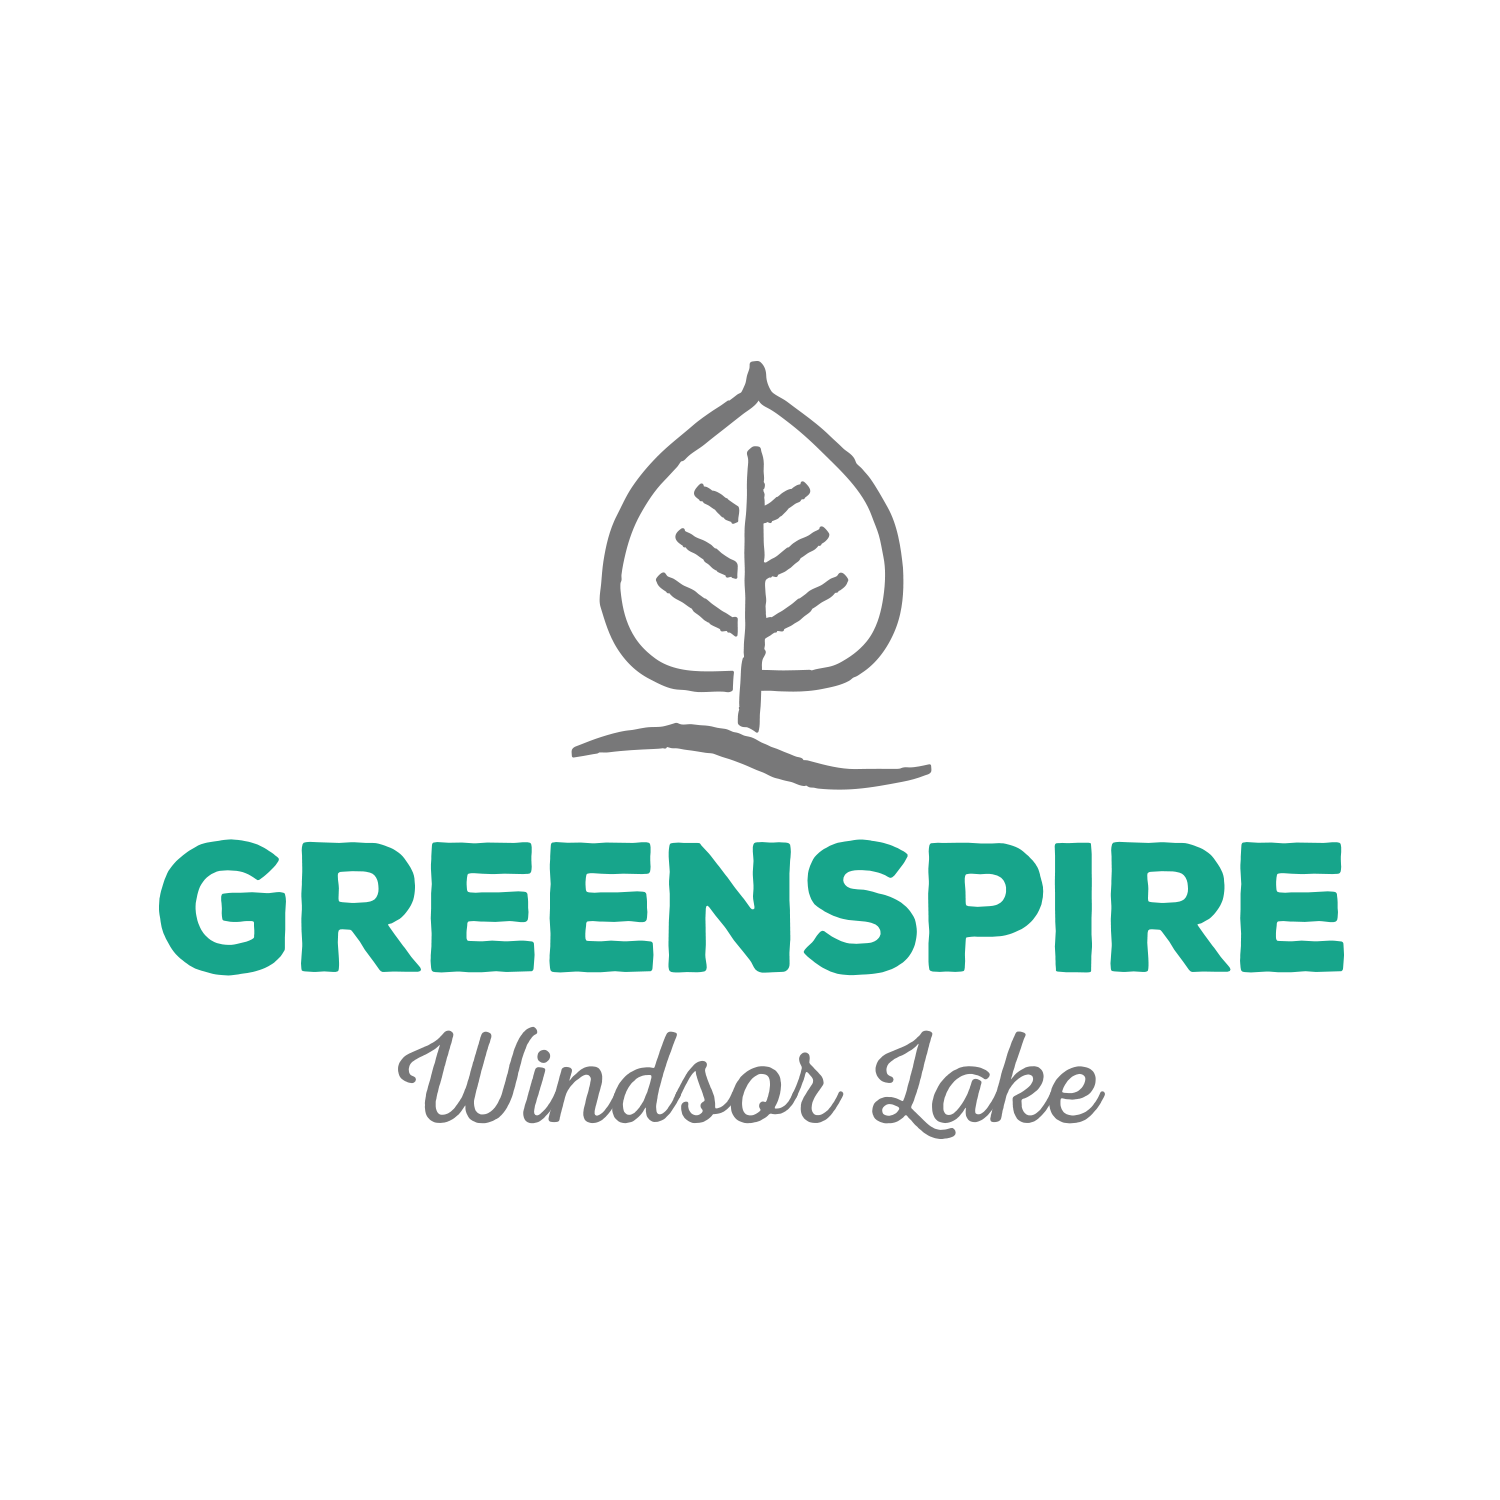 Greenspire at Windsor Lake Logo Design - Windsor, CO Master Planned Community